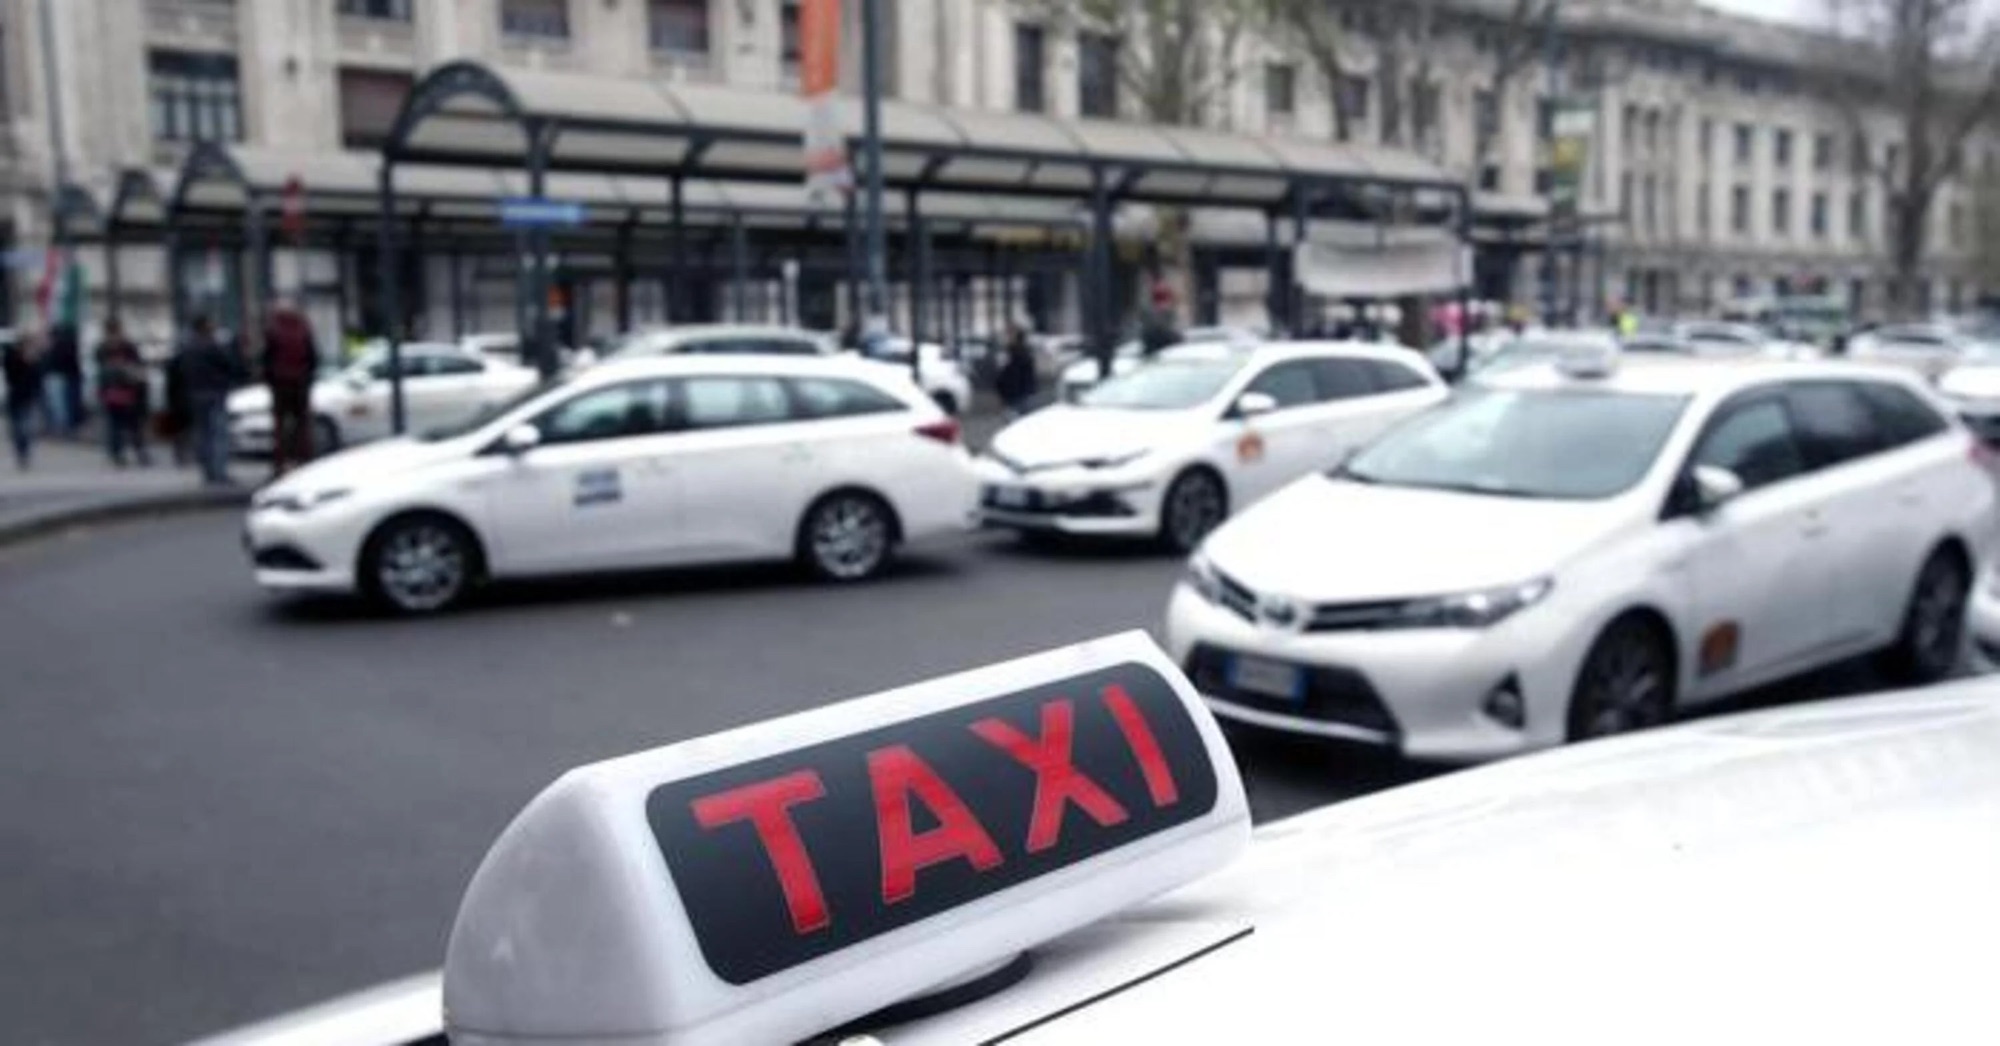 Taxi, Uiltrasporti: Arrivare presto a completamento della legge 12/19 per riassetto settore. Vigileremo su promesse Ministro Salvini